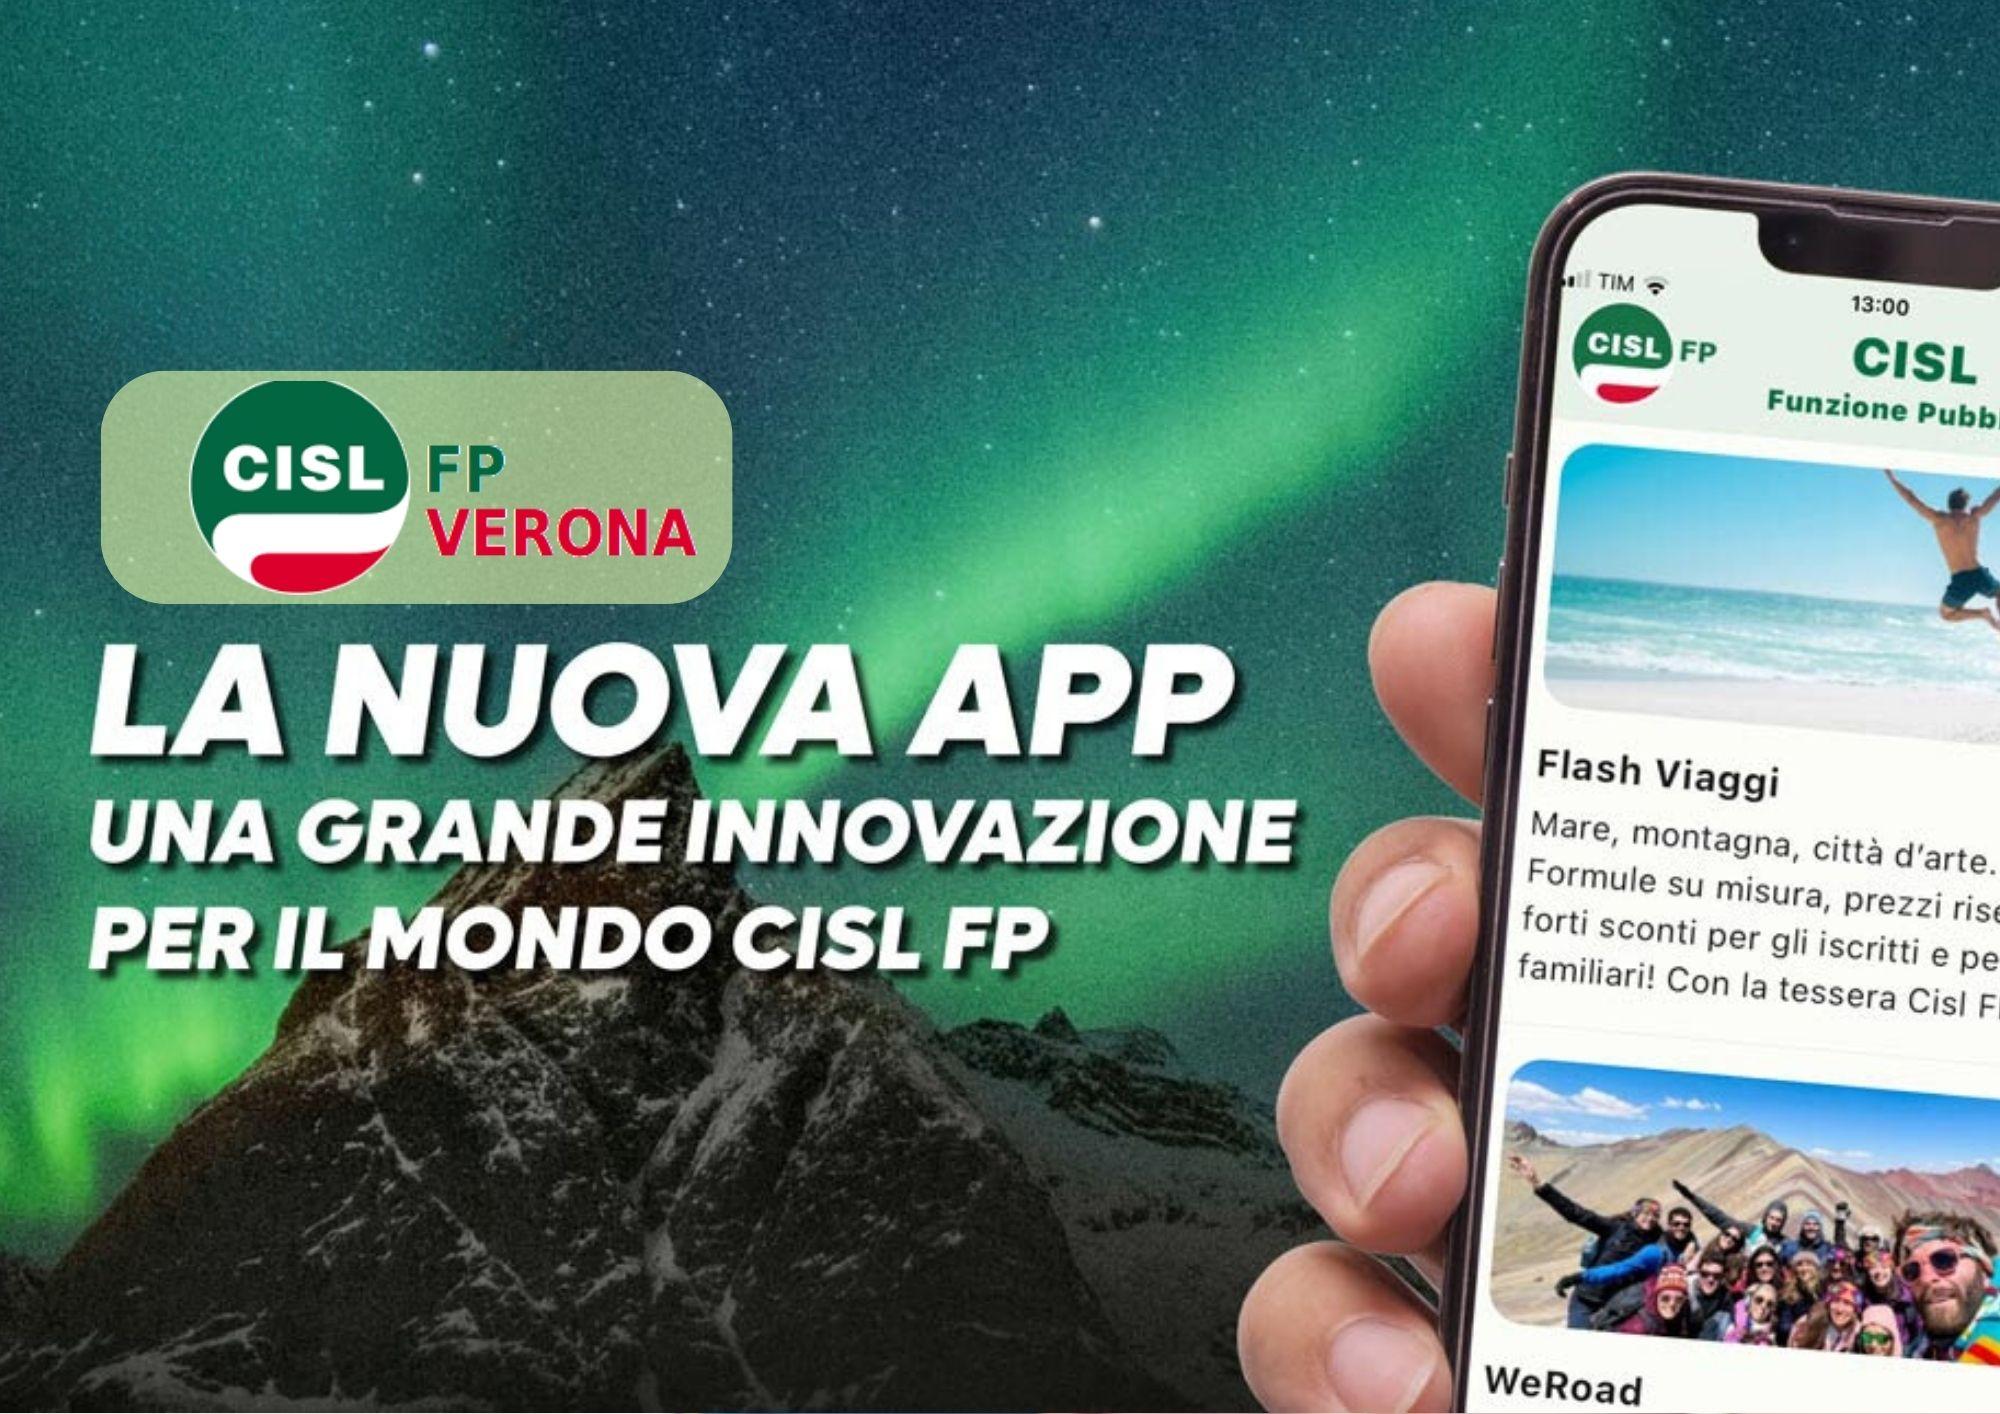 CISL FP Verona. Scarica subito la App CISL FP sul tuo smartphone. Resta connesso. Fallo da qui!